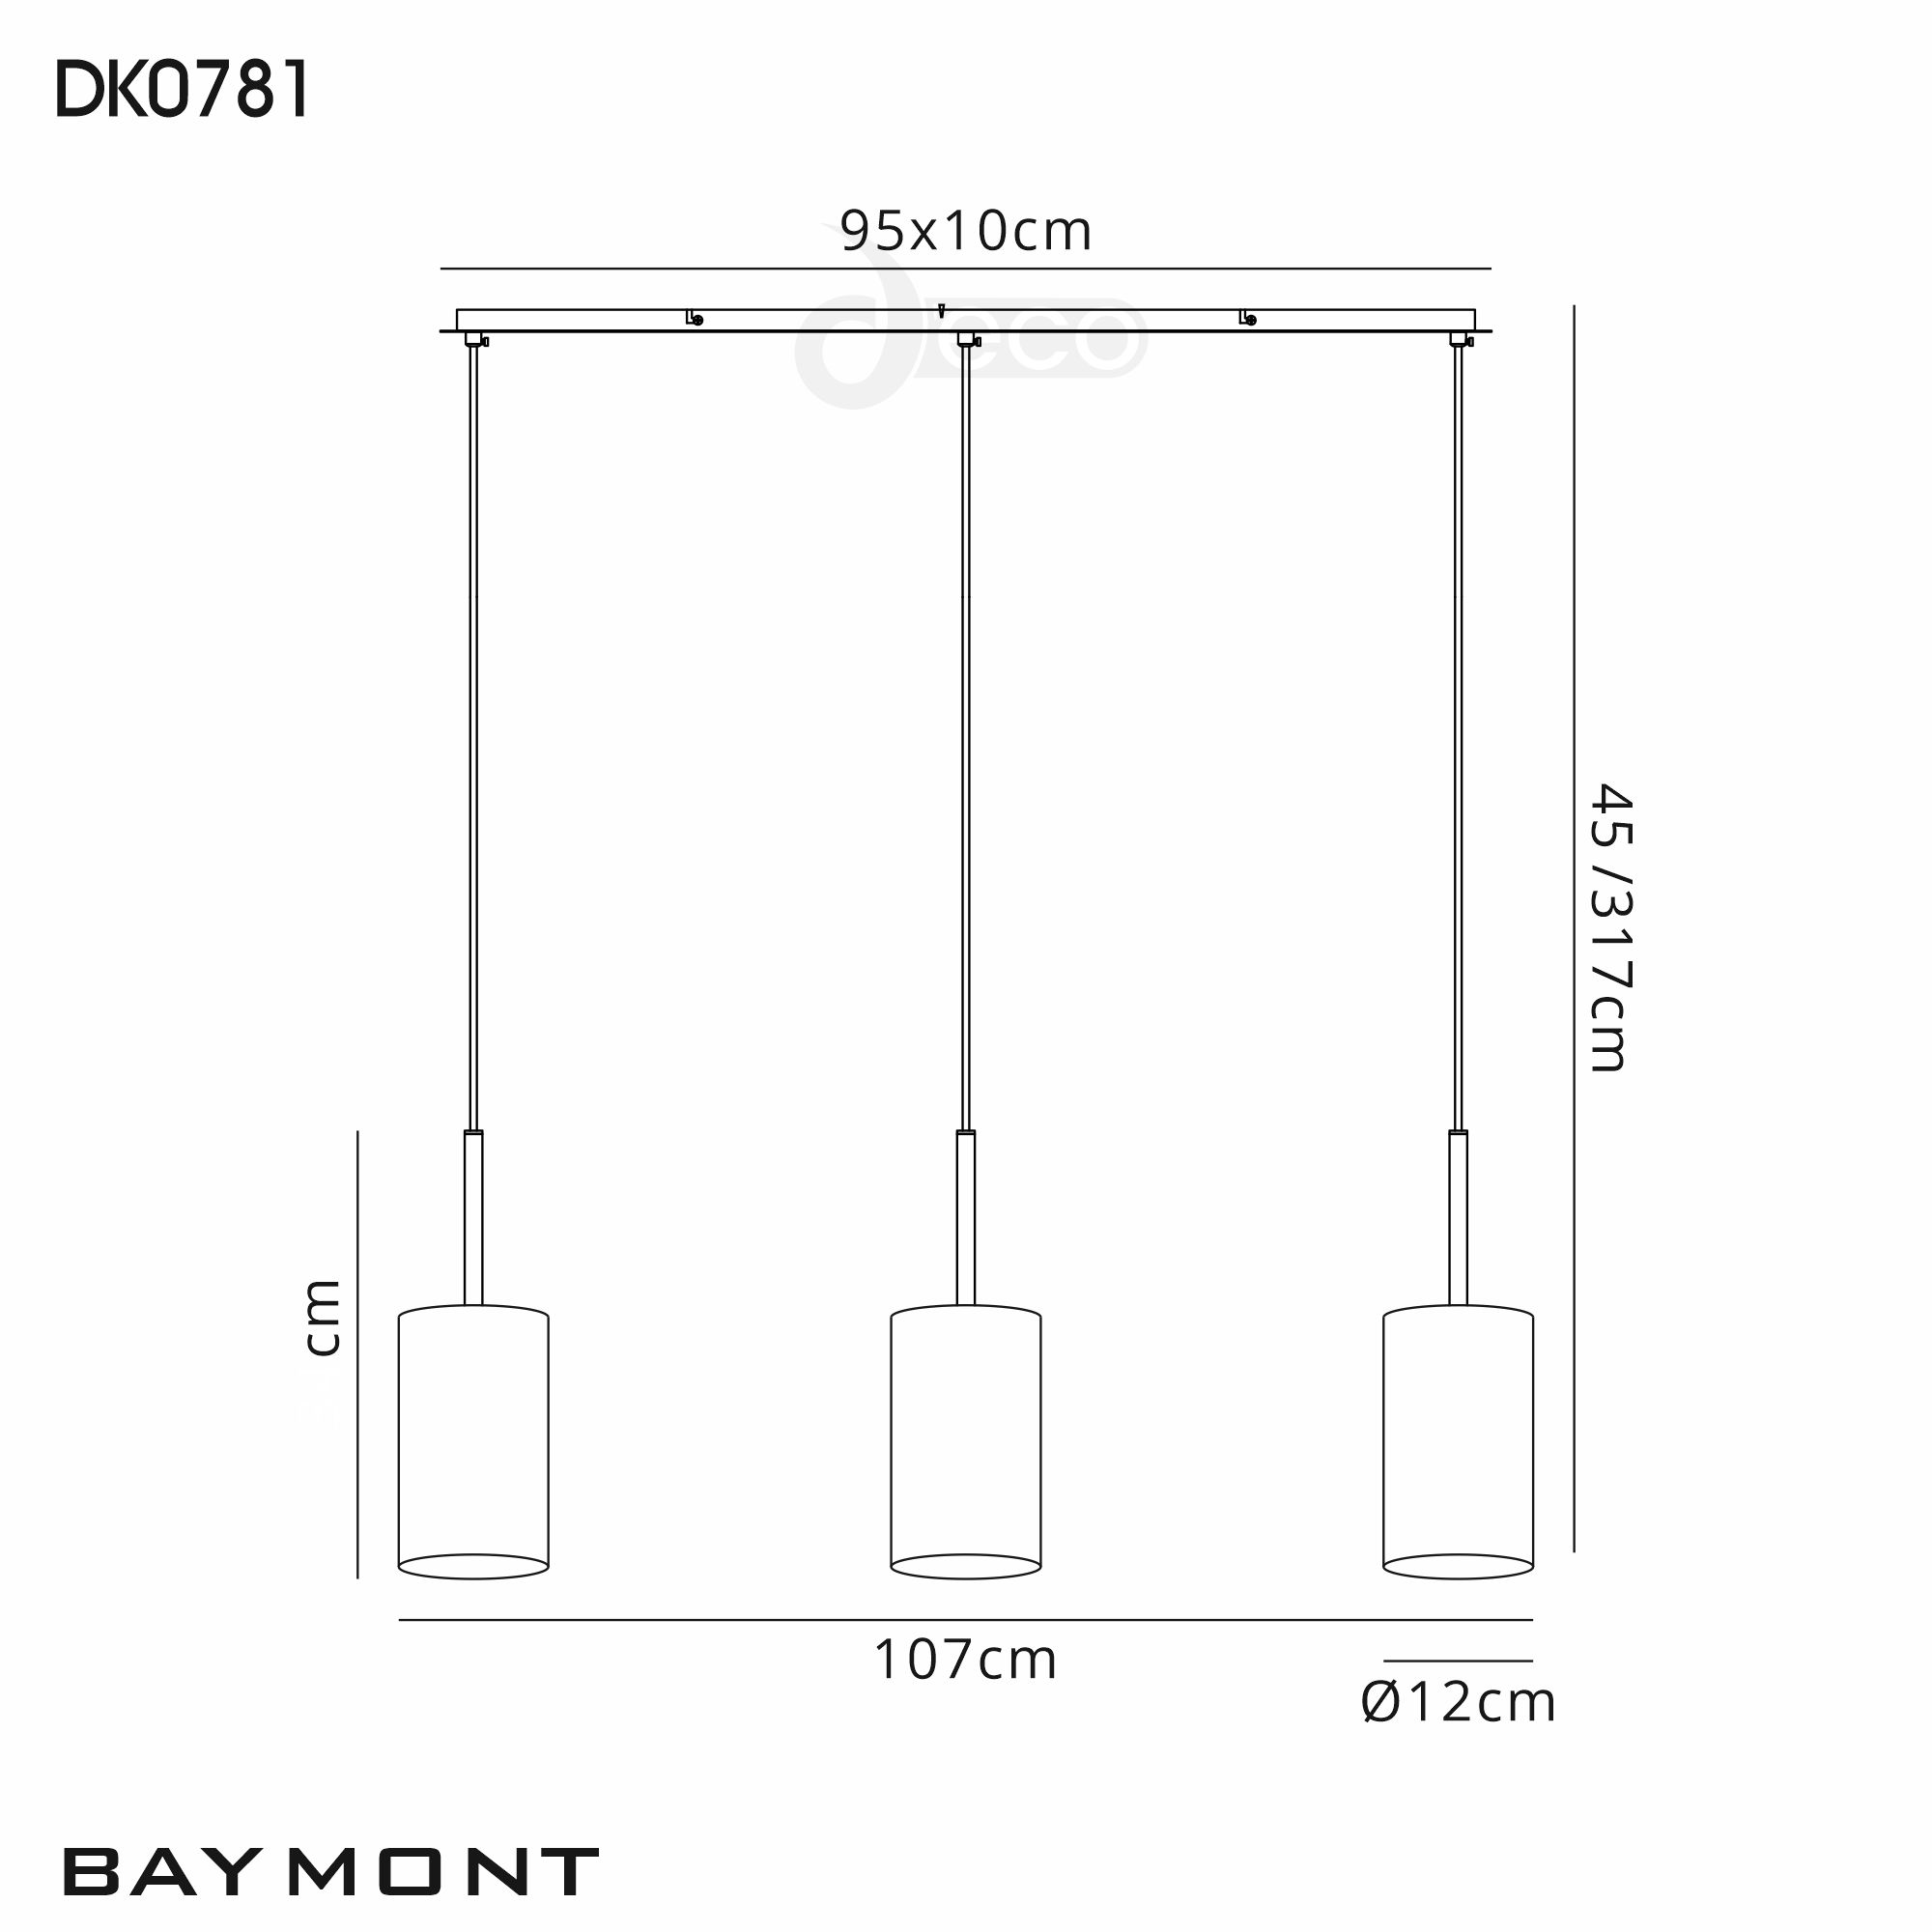 DK0781  Baymont 12cm Shade 3 Light Pendant Satin Nickel, White